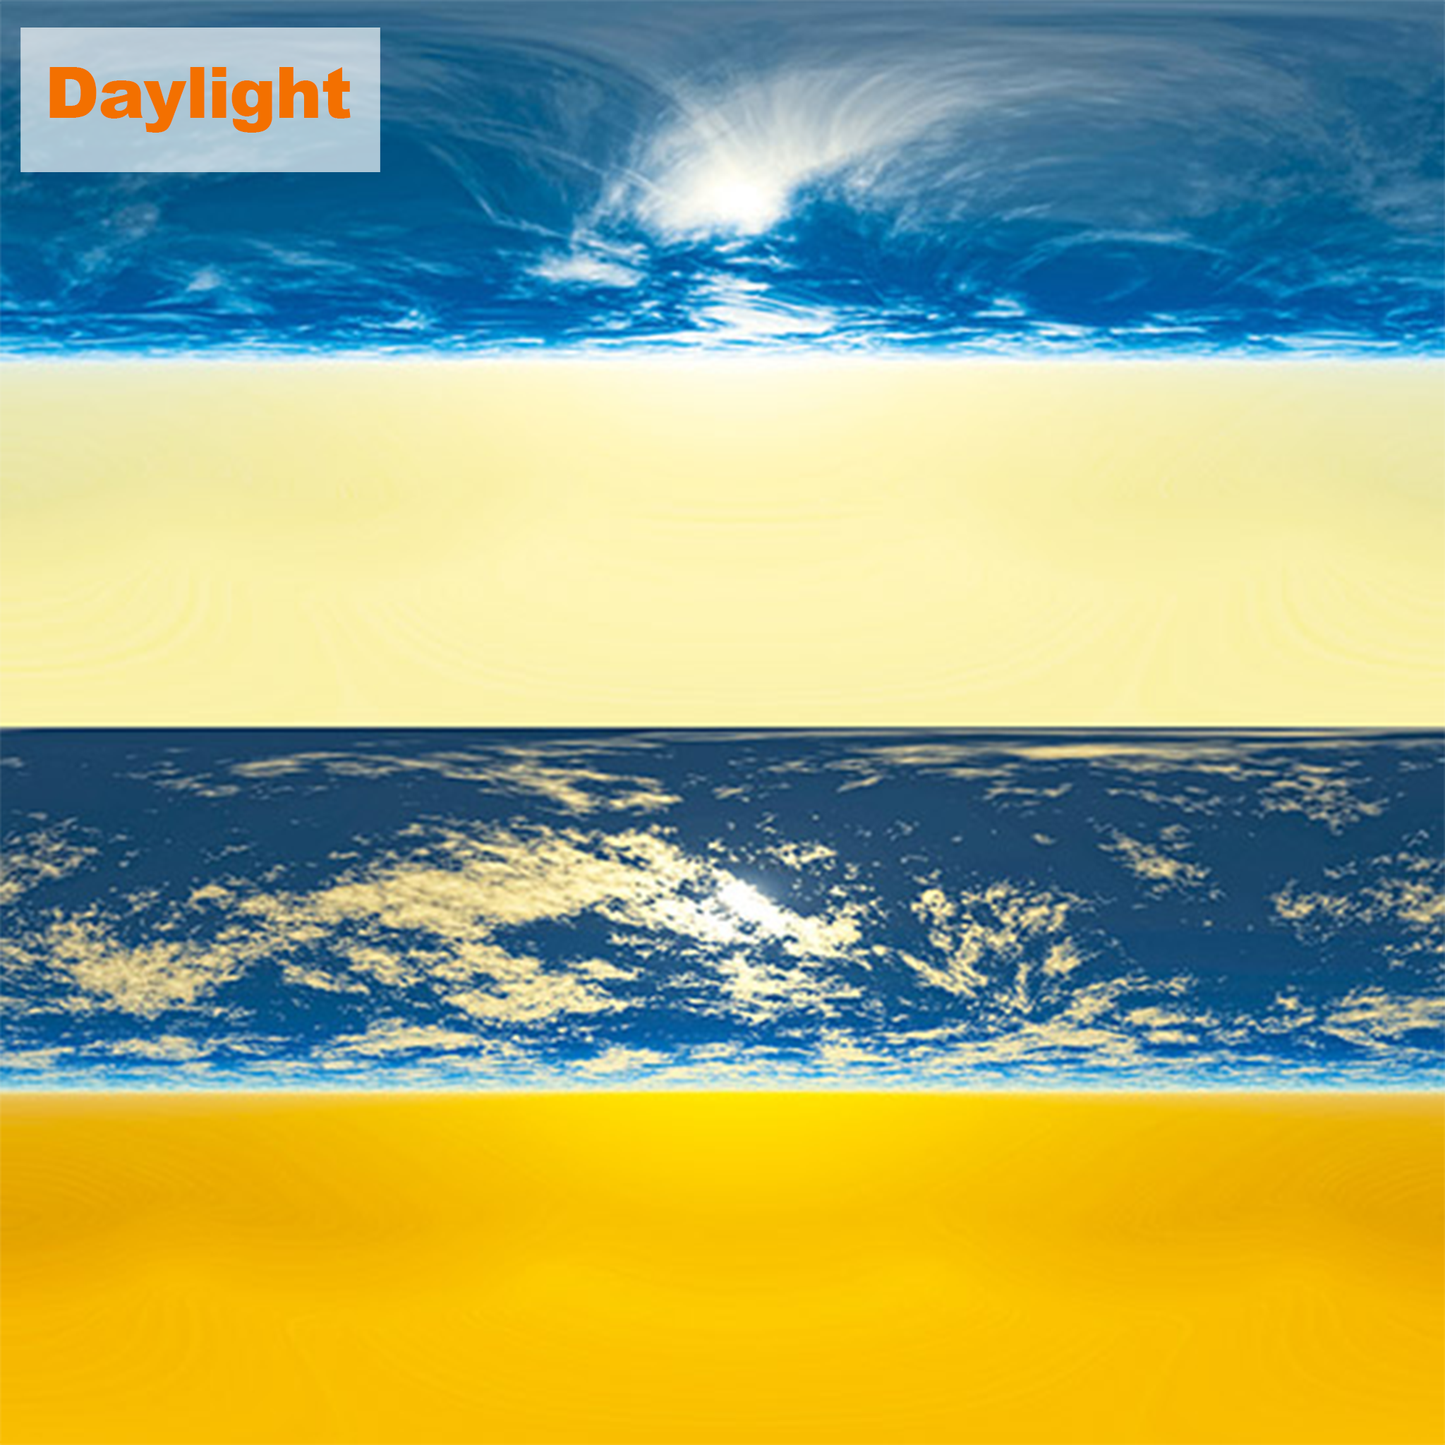 HDRI【No.30 DOSCH HDRI: Daylight】